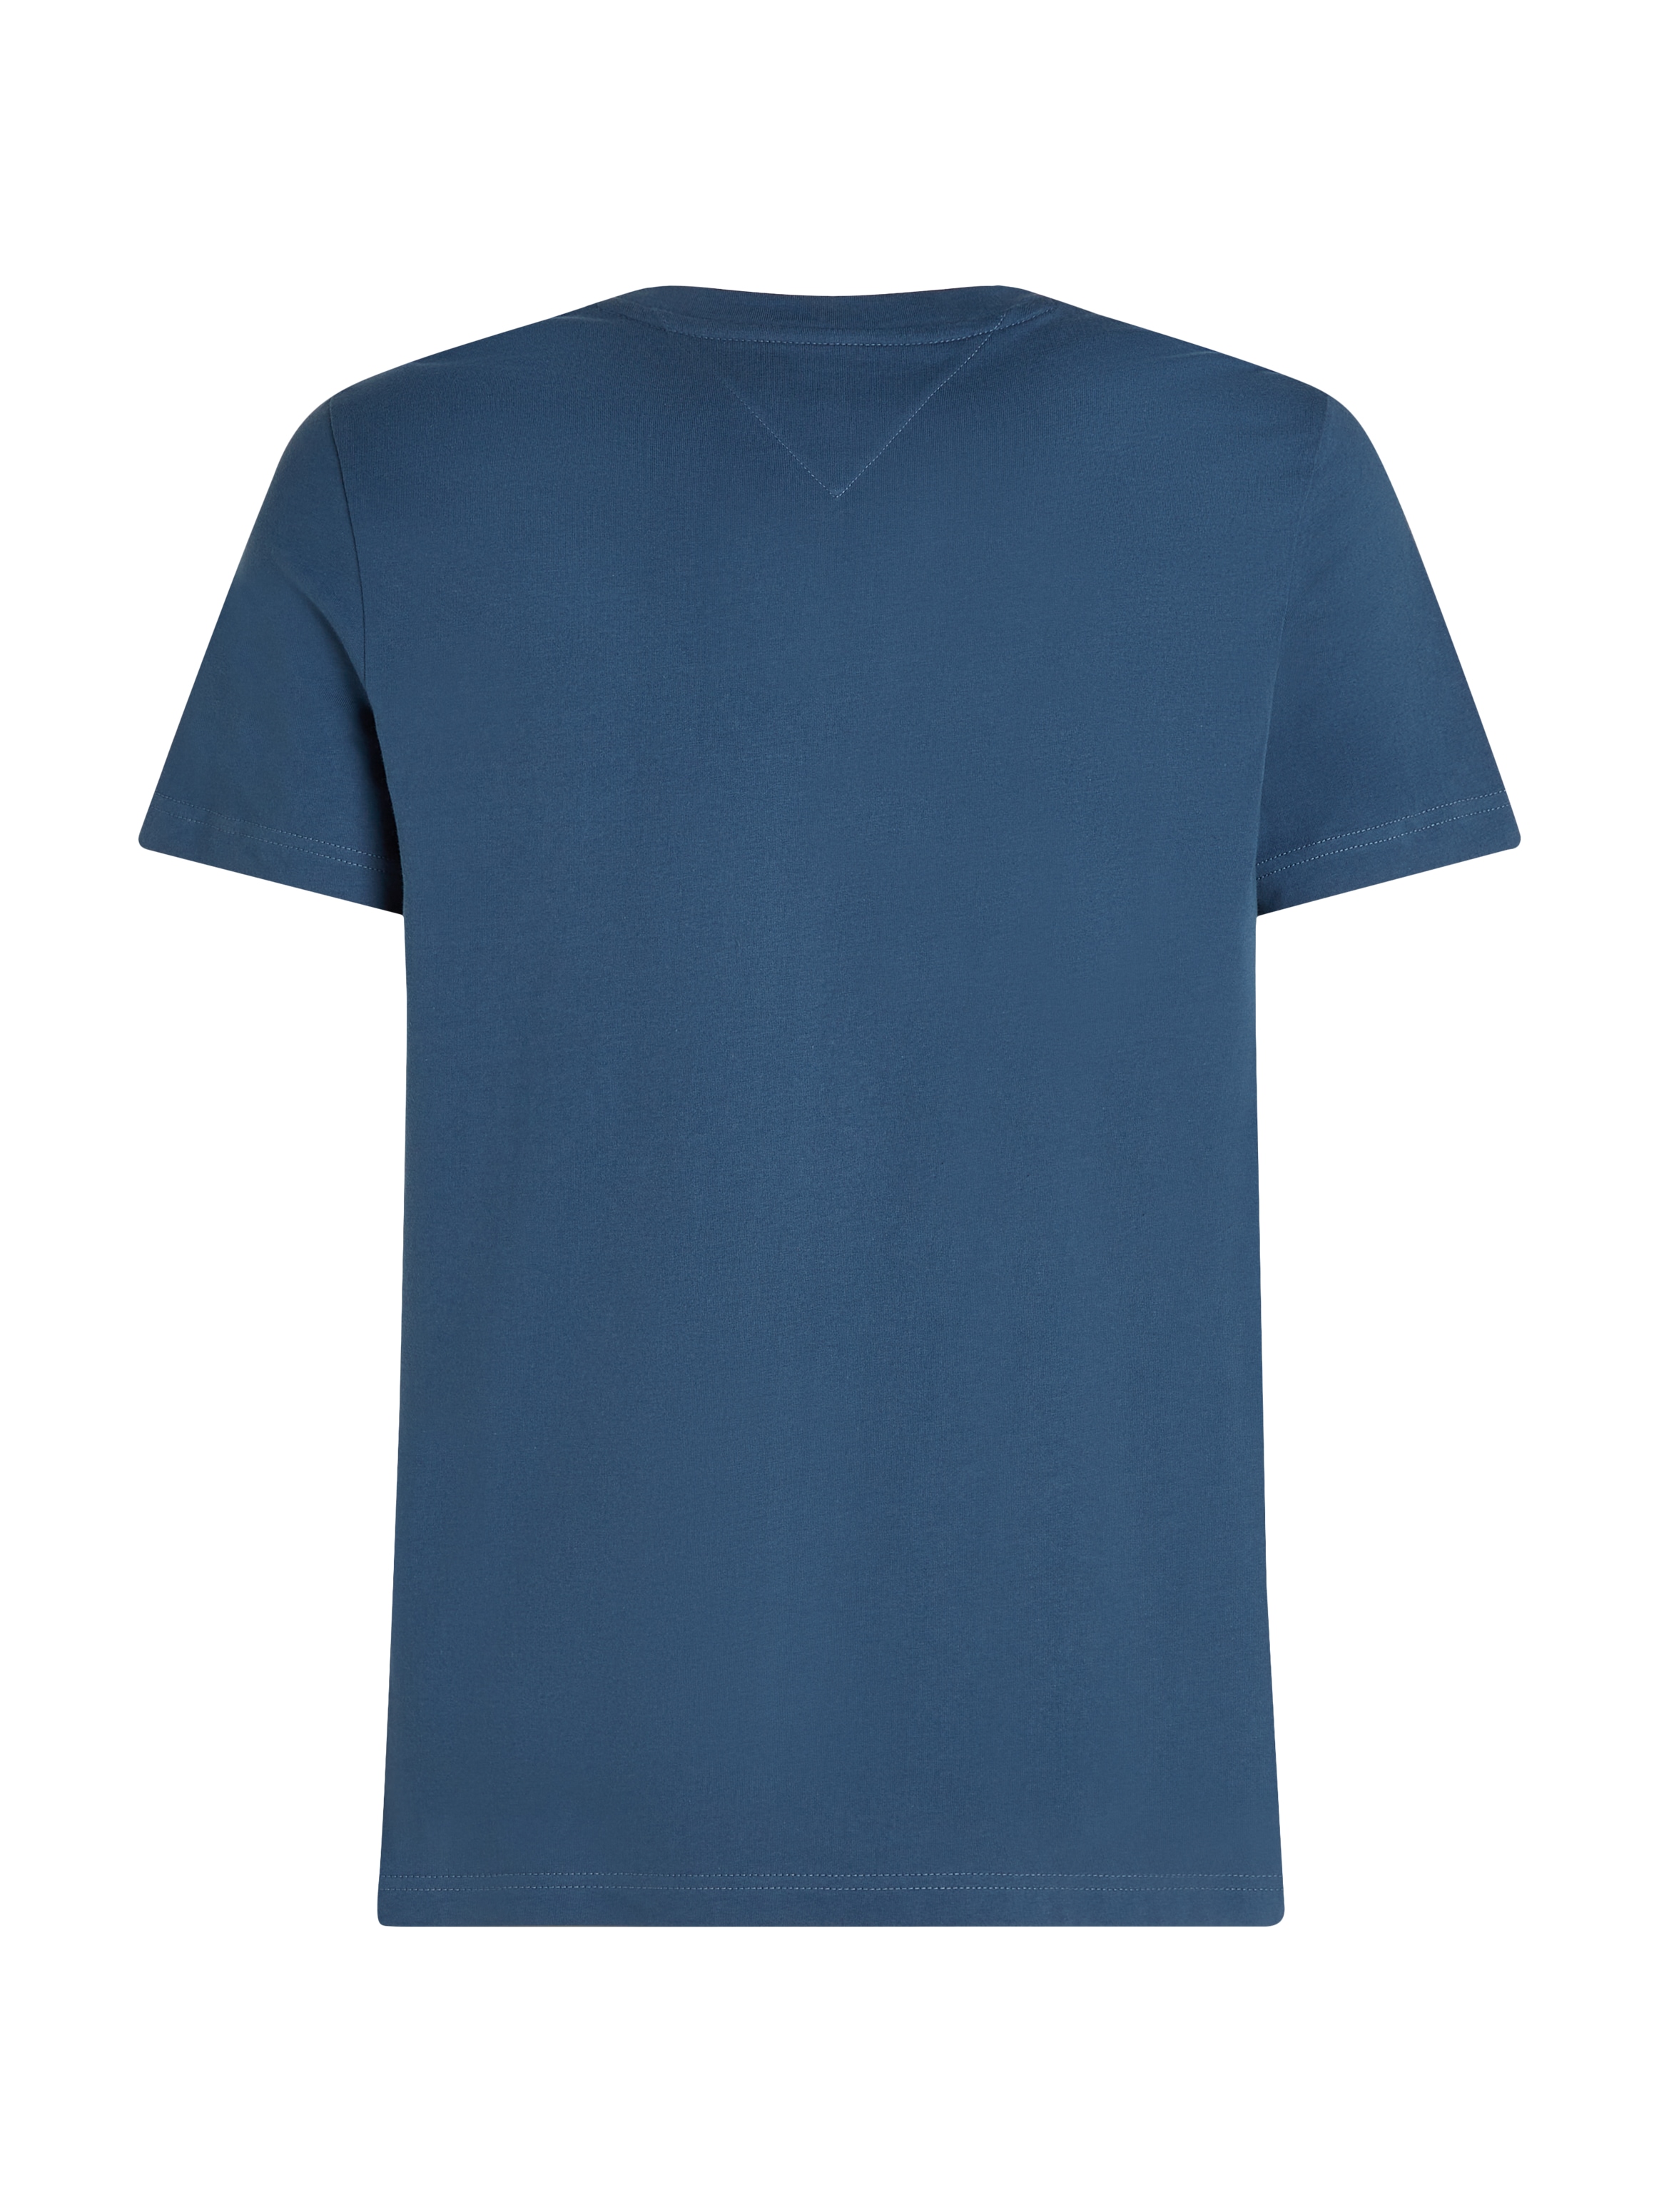 Tommy Hilfiger T-Shirt »TOMMY LOGO TEE«, aus reiner, nachhaltiger Baumwolle